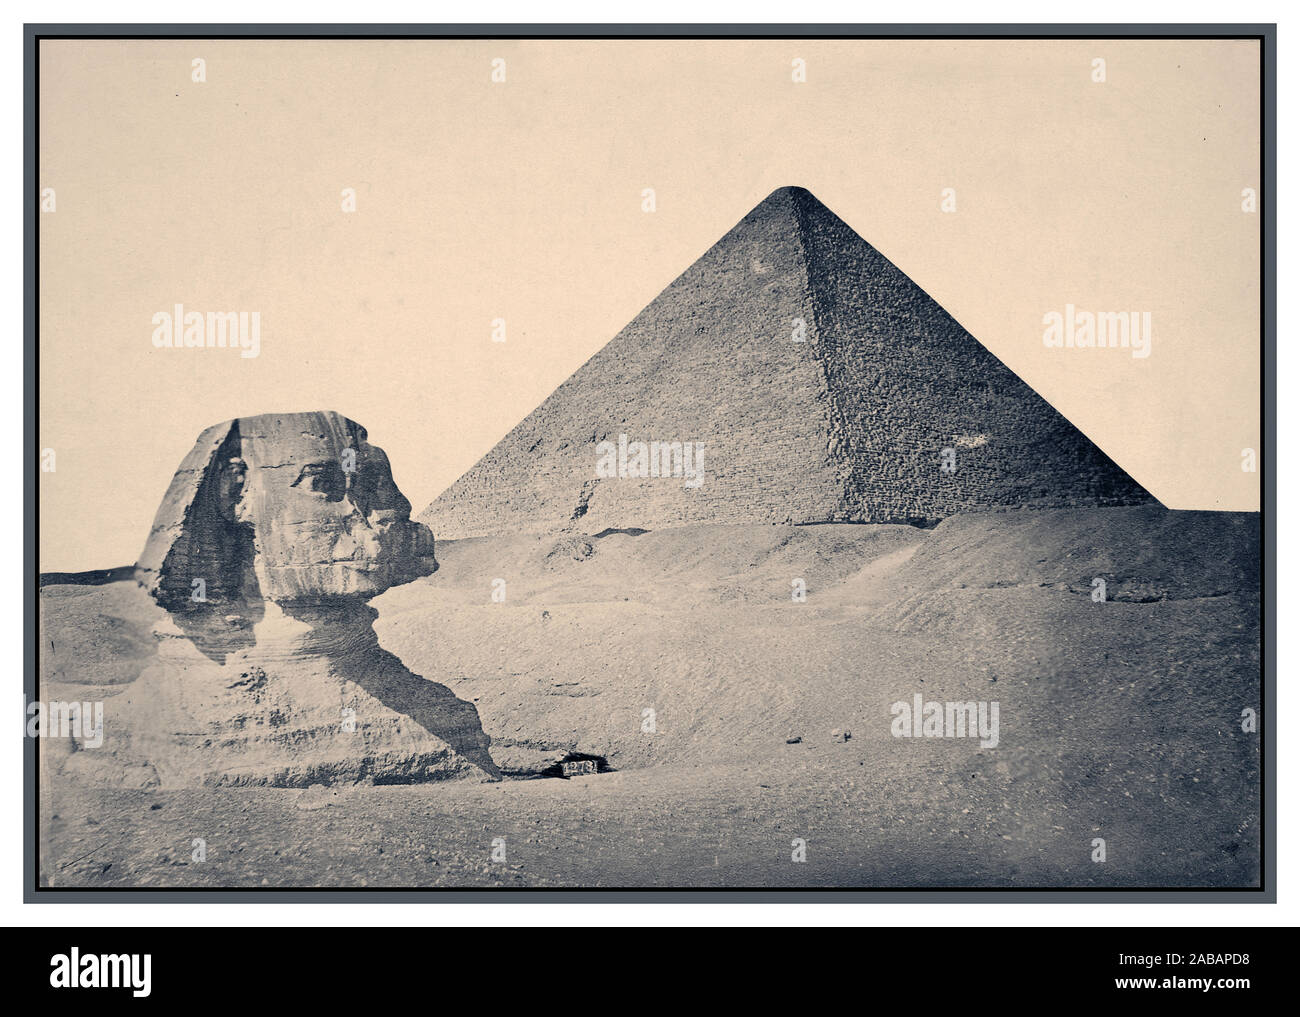 1880 Vintage Giza. Pirámide de Khafre y Sphinx 1880 B&W imagen sepia de Giza. ca. 2575 BC-ca. 2465 BC (Pirámide y Esfinge) Pirámides de Giza, Muḩāfaz̧at Maţrūḩ, Egipto África EGIPCIO Egipcio Antiguo, IV Dinastía Gran Esfinge de Giza, comúnmente conocida como la Esfinge de Giza o simplemente la Esfinge, es una estatua yacente de piedra caliza de una esfinge, una criatura mítica con el cuerpo de un león y la cabeza de un humano que enfrenta directamente desde el oeste hacia el este, se encuentra en la meseta de Giza en la ribera occidental del Nilo, en Giza, Egipto. Foto de stock